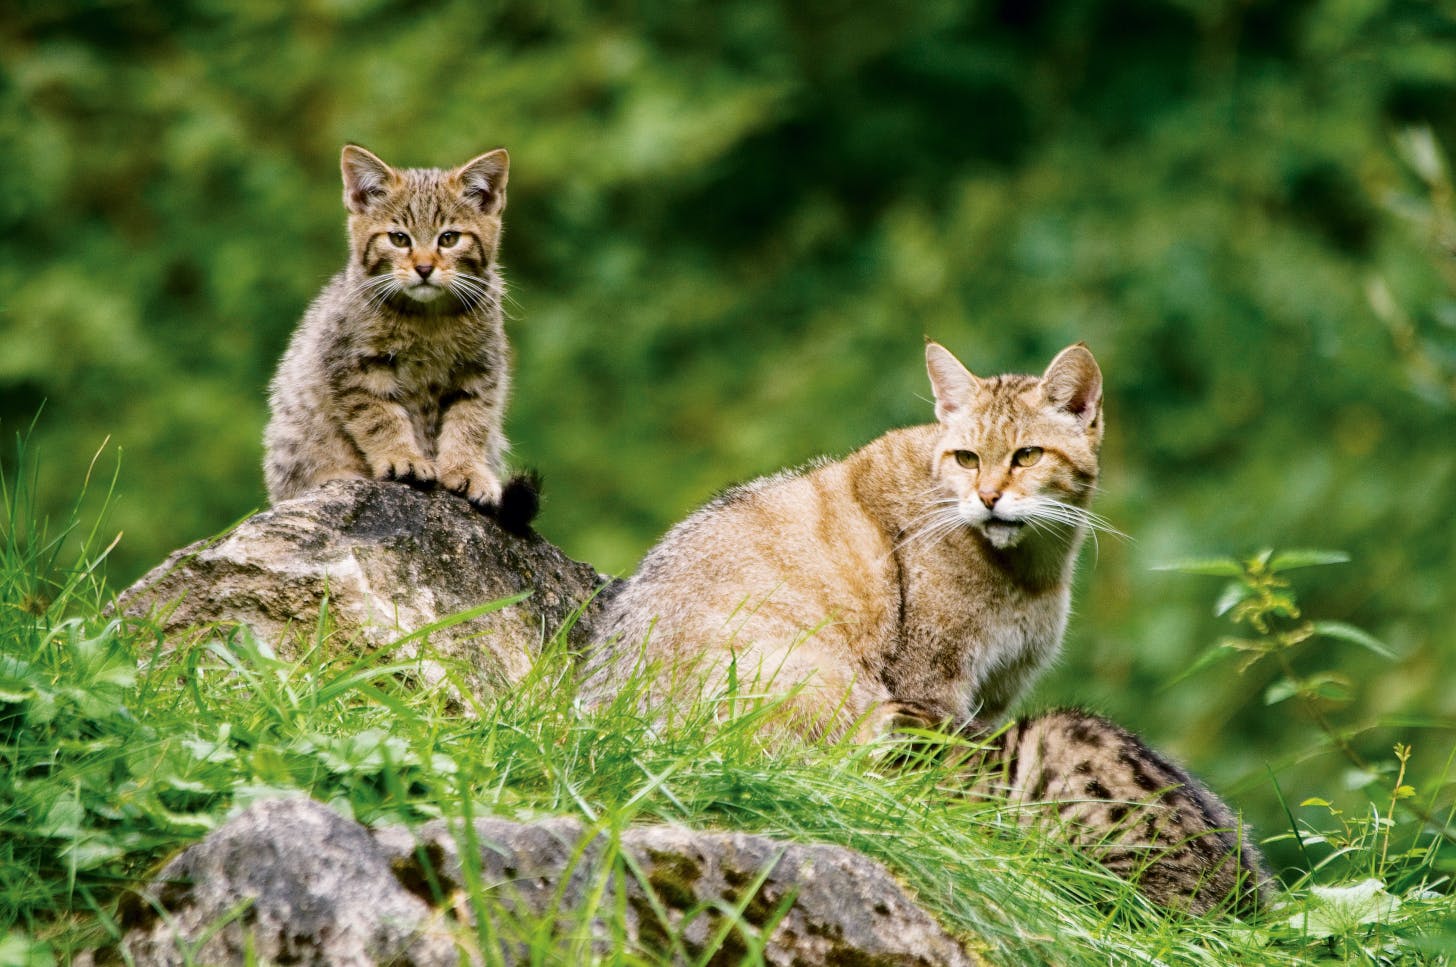 Am 27. Juni wandern die Teilnehmer auf dem Wildkatzen-Walderlebnis-Pfad durch das Reich der scheuen Räuber. ©Thomas Stephan/BUND